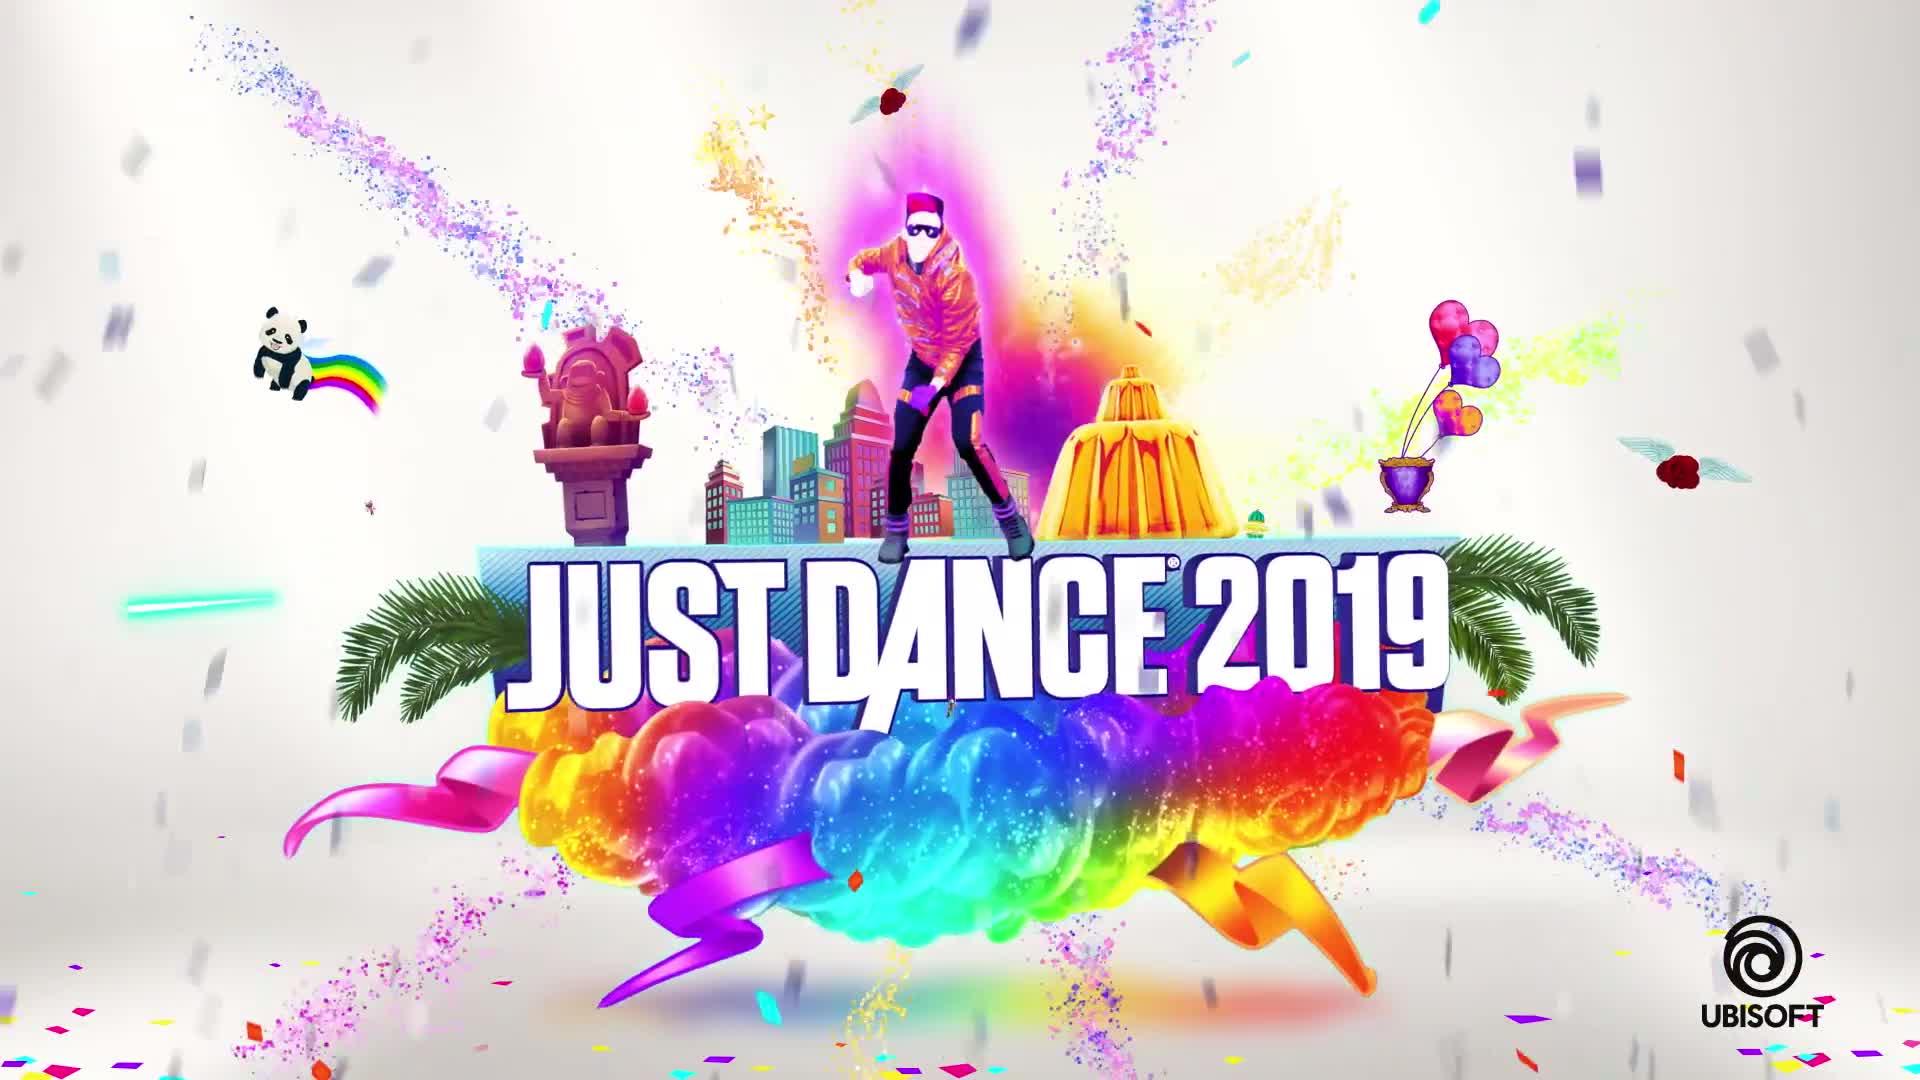 Just Dance 2019 Nintendo Switch review voor kinderen - Mamaliefde